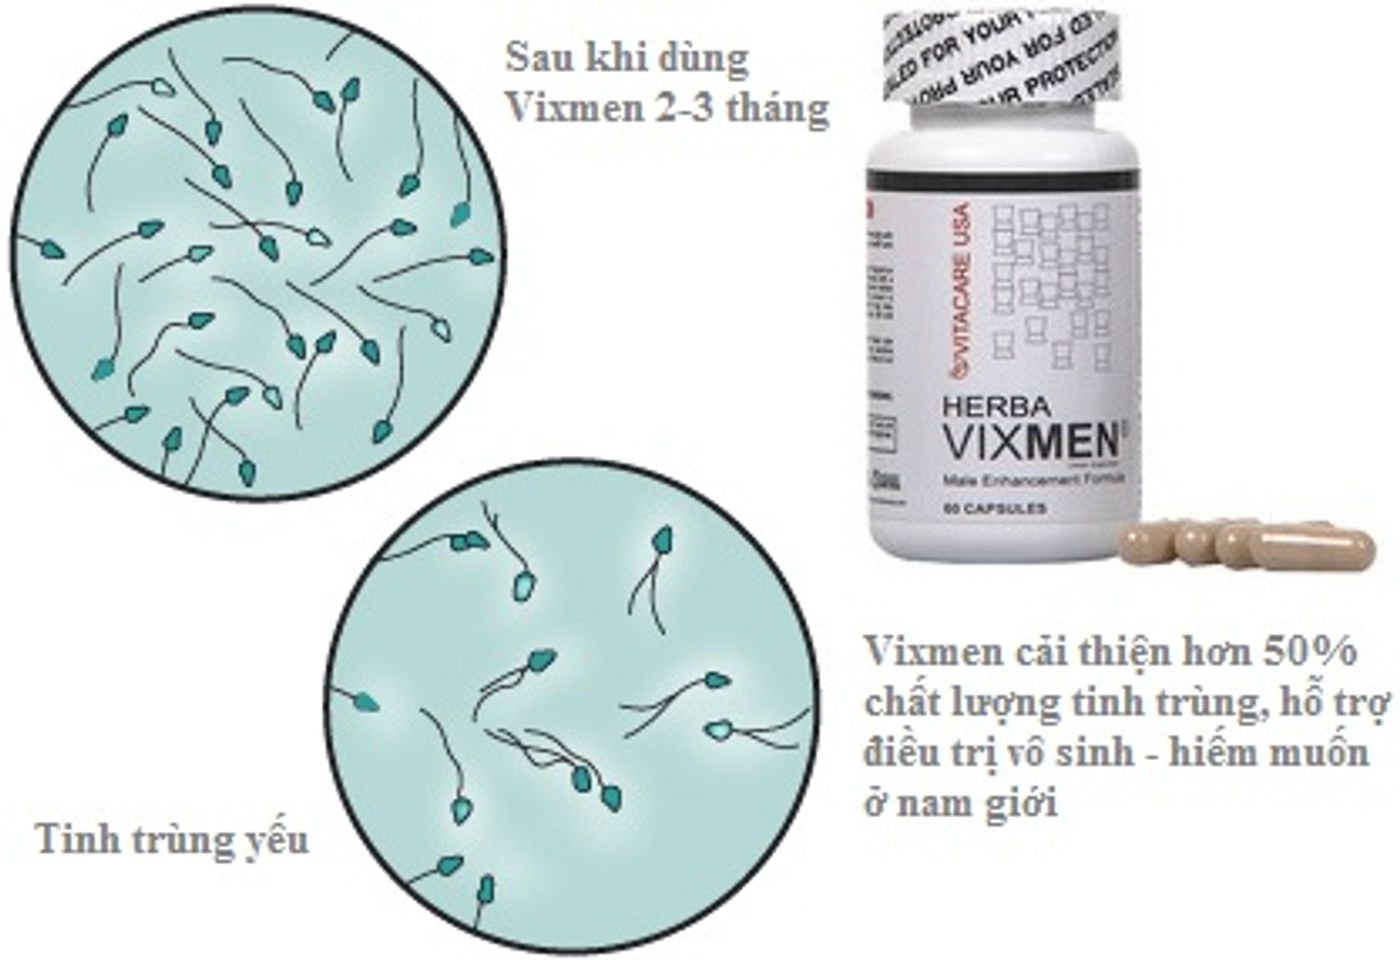 Herba Vixmen hỗ trợ điều trị vô sinh, hiếm muộn ở nam giới